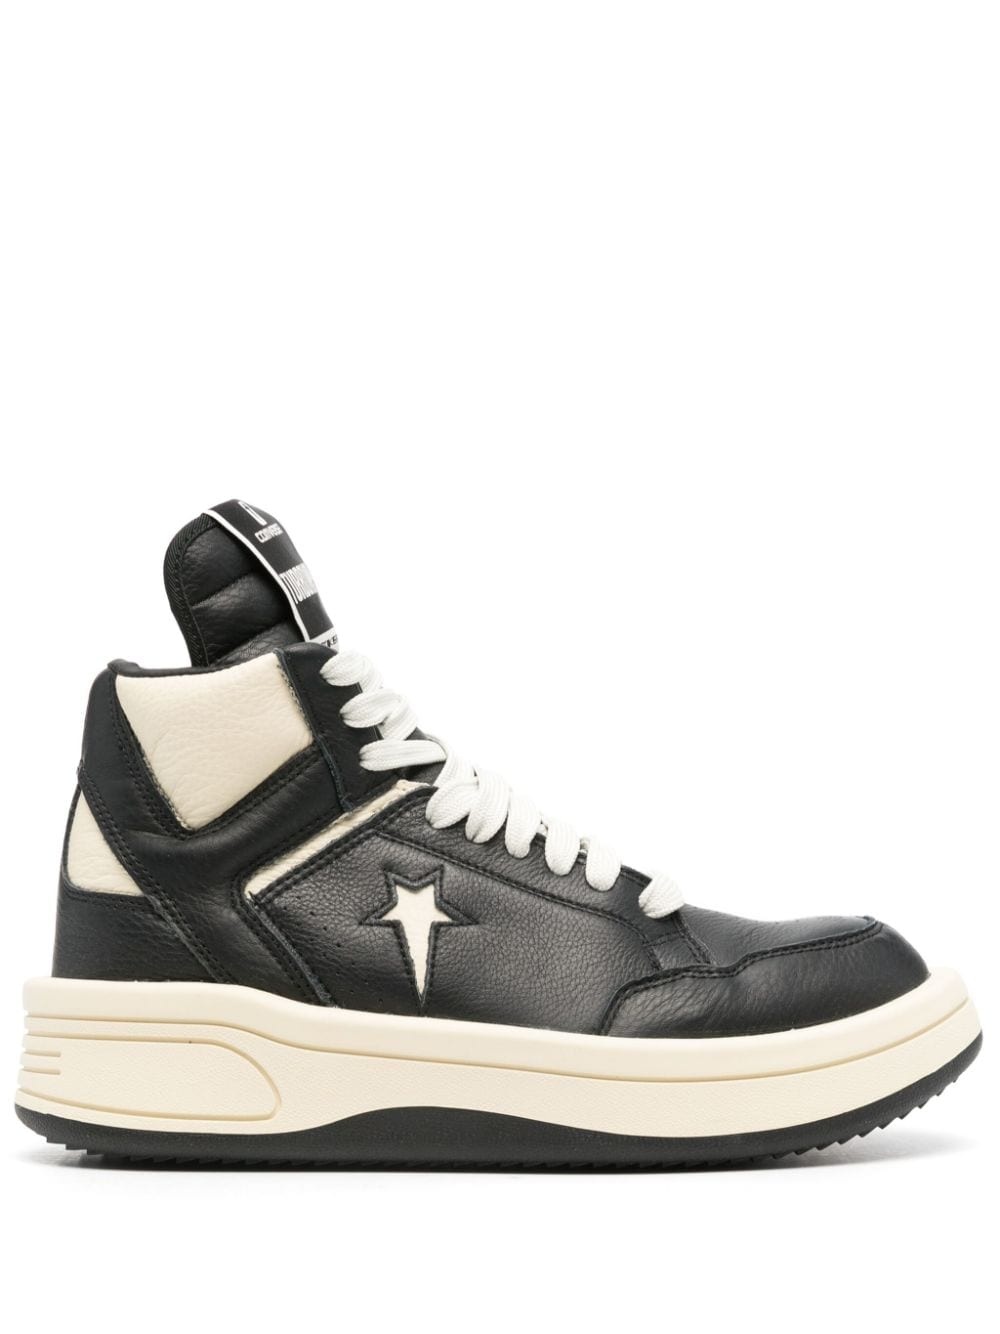 x DRKSHDW Turbowpn leather sneakers - 1